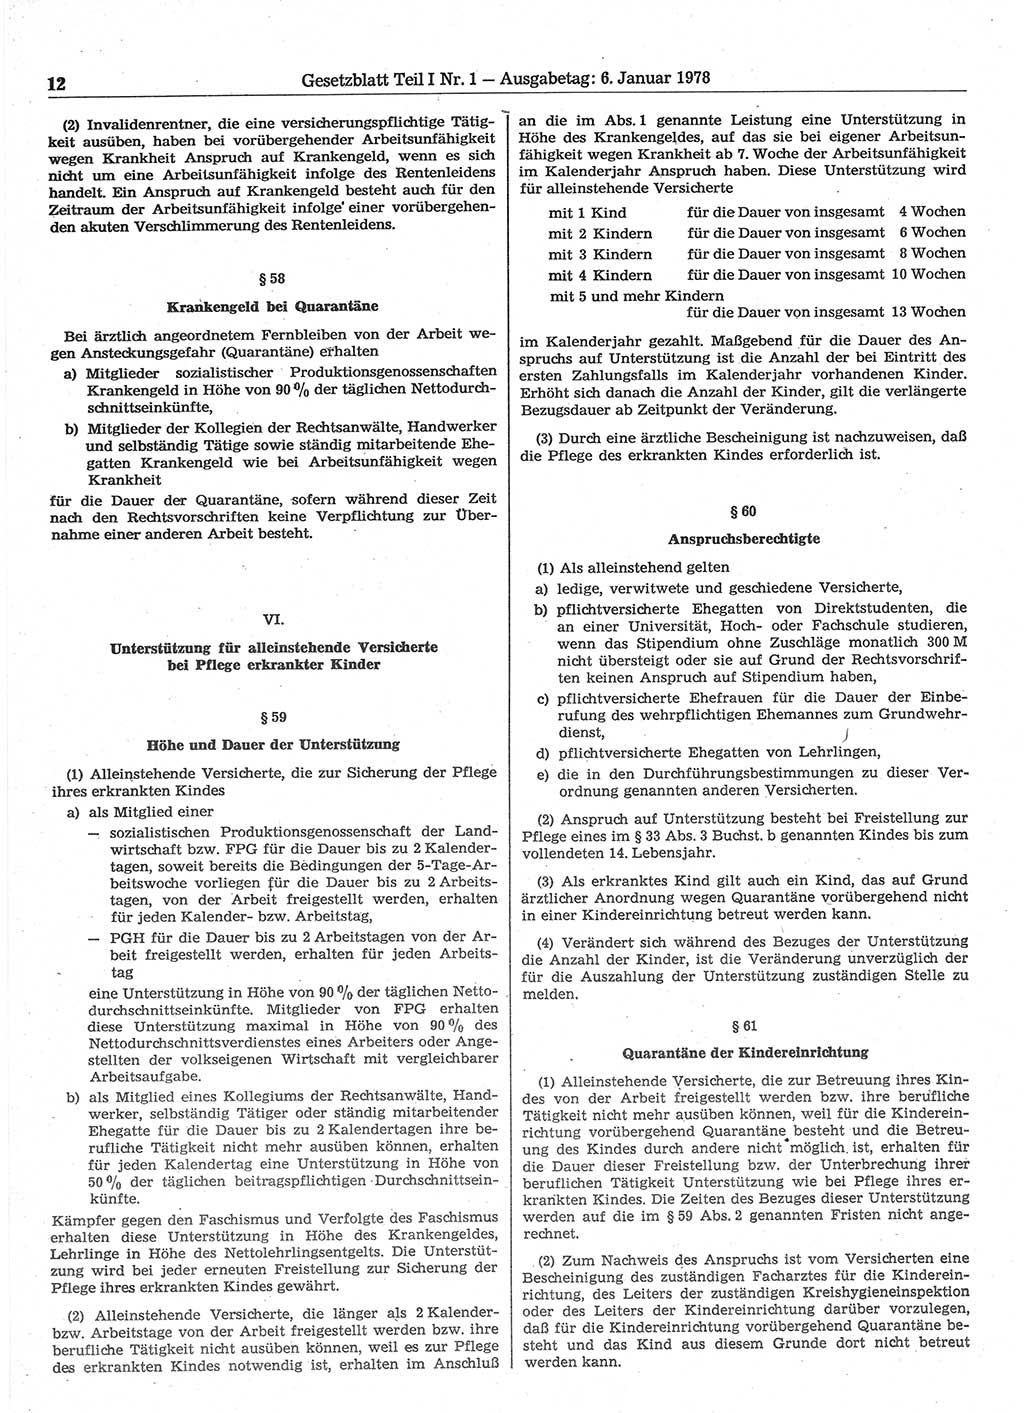 Gesetzblatt (GBl.) der Deutschen Demokratischen Republik (DDR) Teil Ⅰ 1978, Seite 12 (GBl. DDR Ⅰ 1978, S. 12)